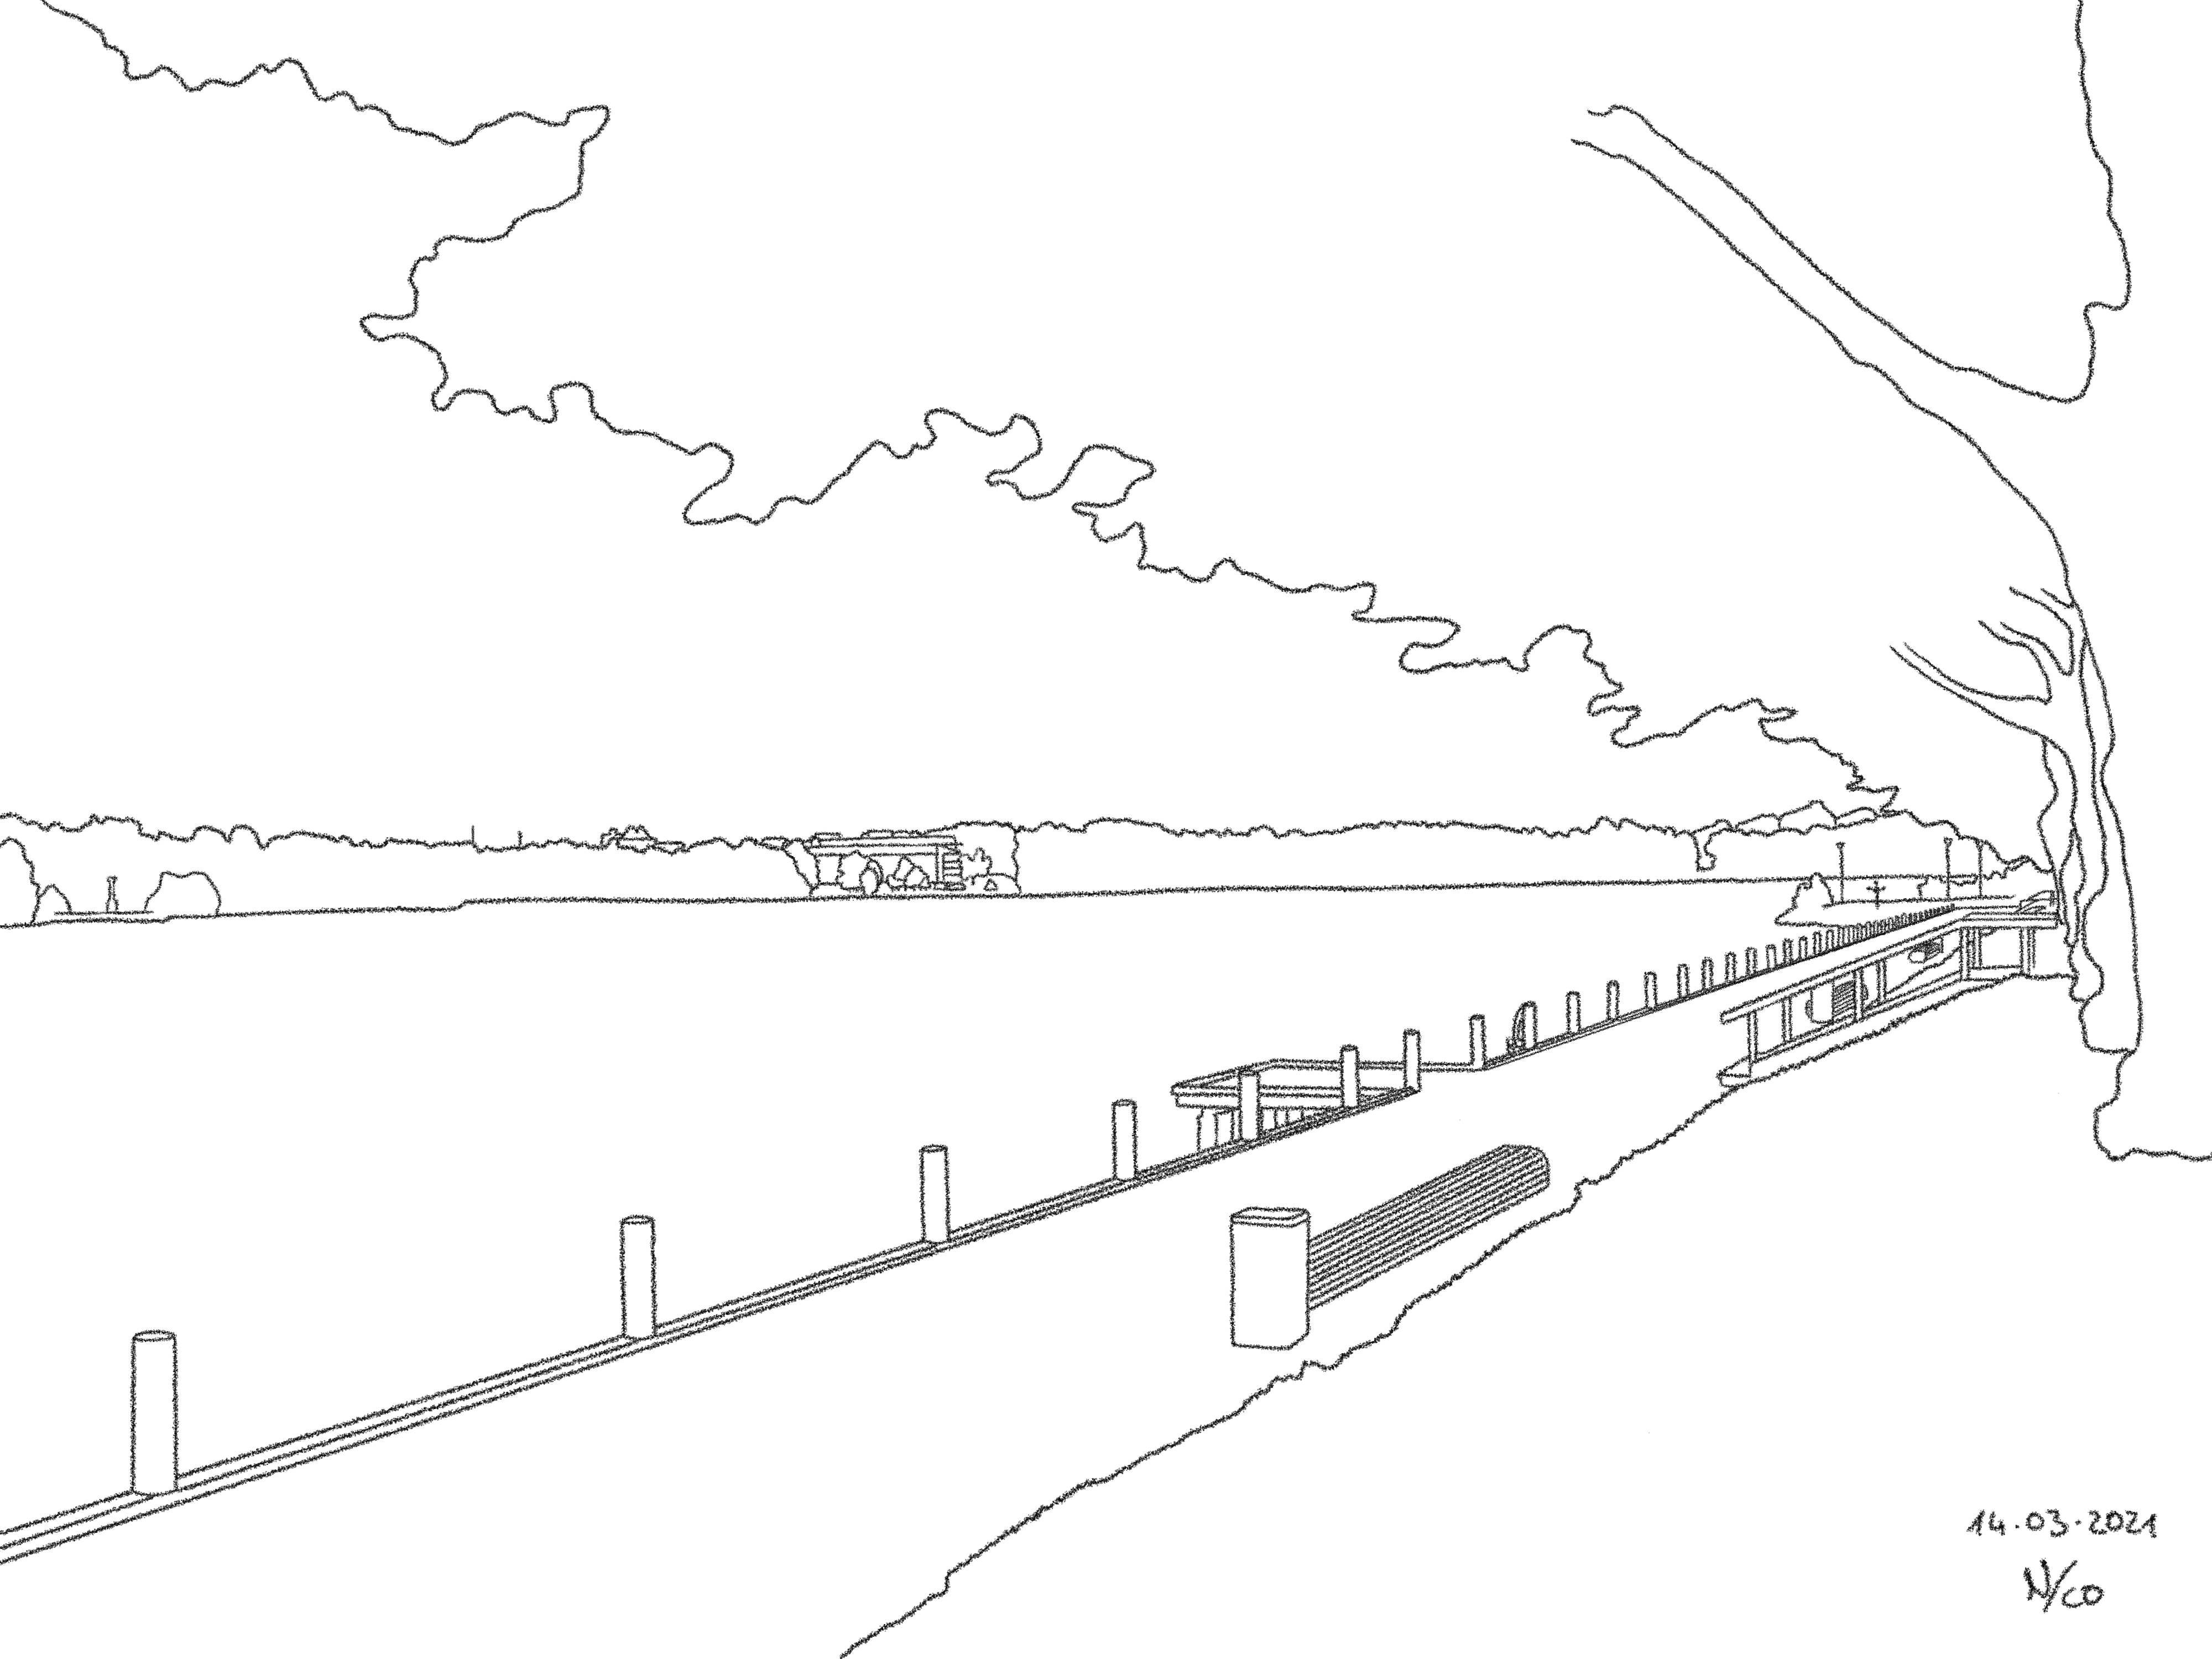 A drawing titled Boardwalk, based on a photo taken at the lake Växjösjön in Växjö.